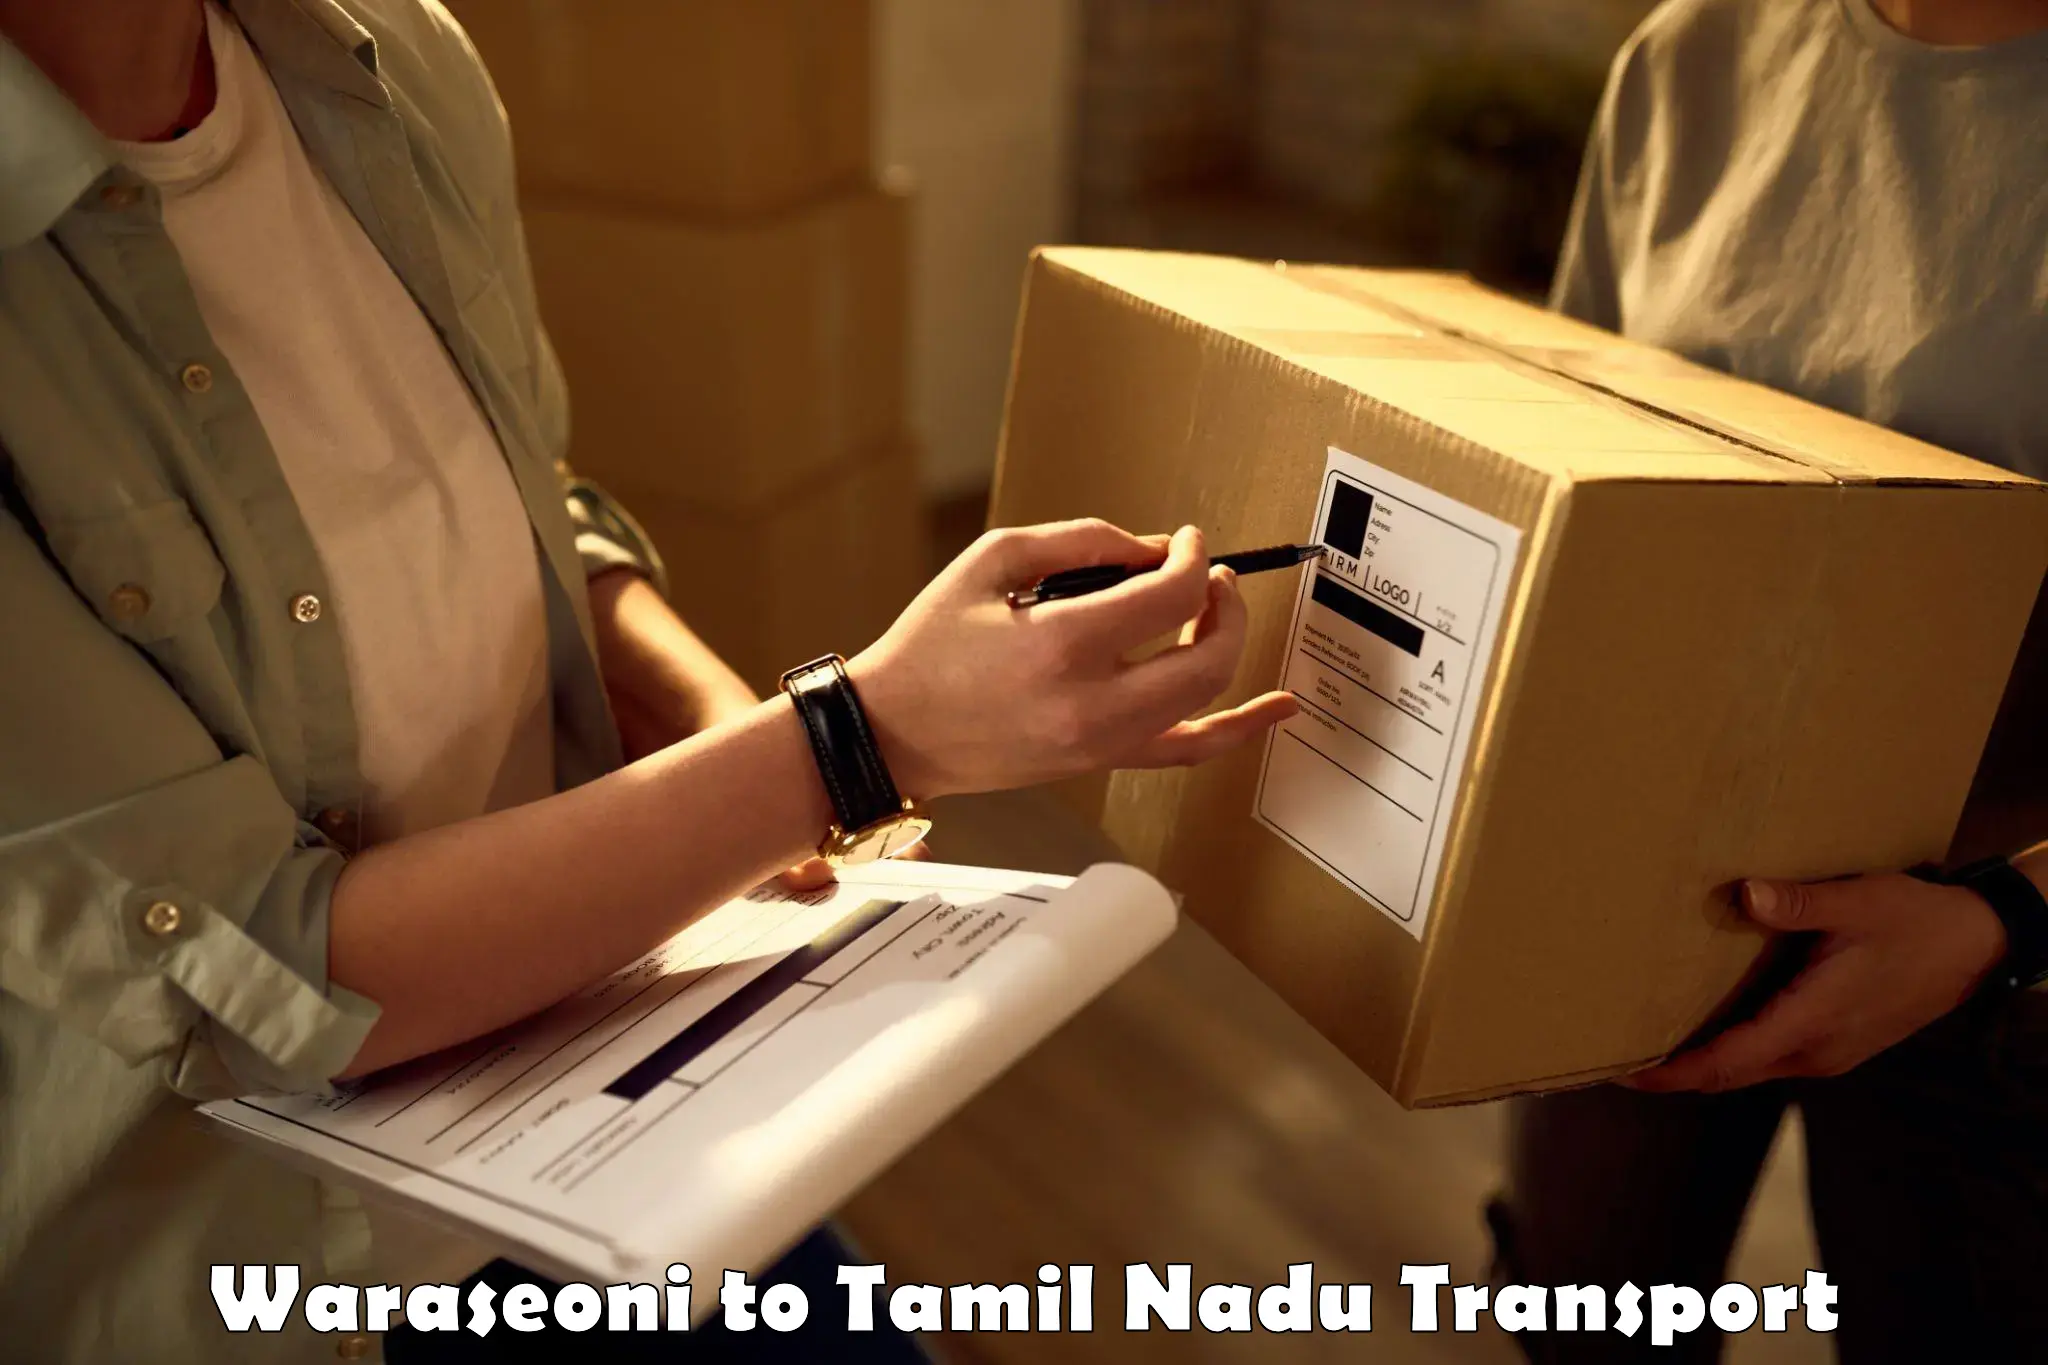 Nearest transport service Waraseoni to Tamil Nadu